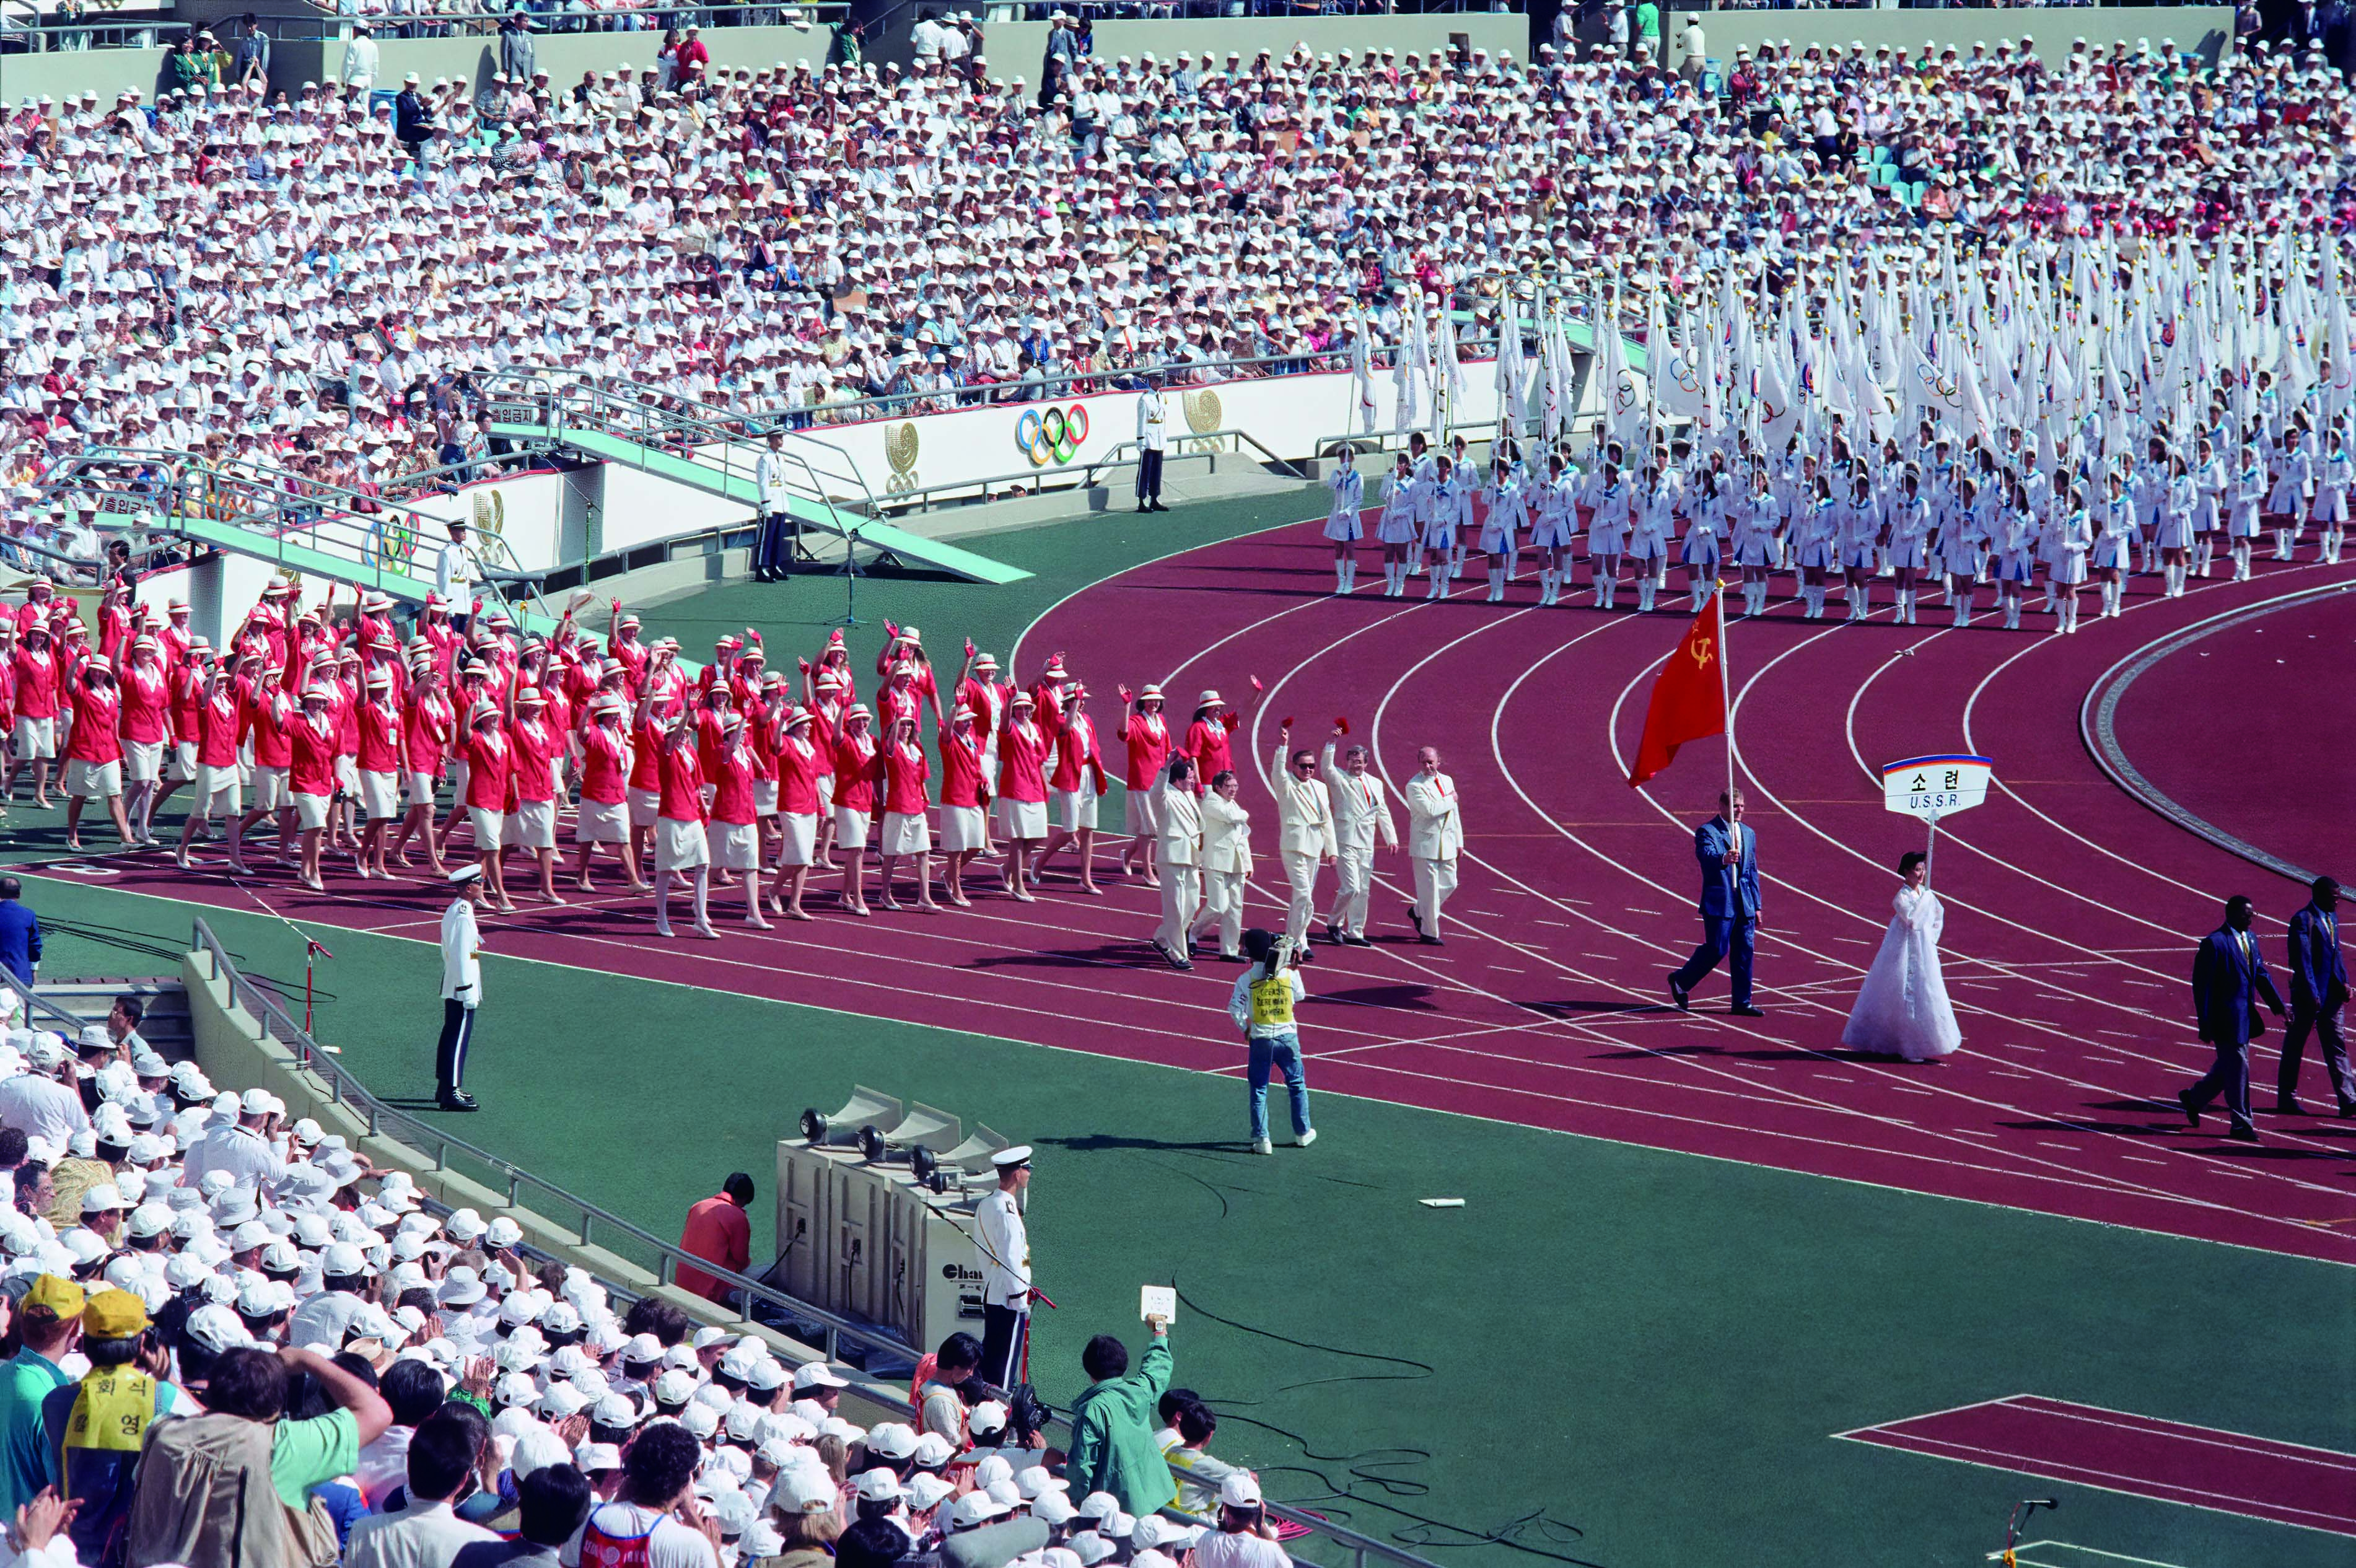 88서울올림픽 소련 선수단 입장 모습(1988)